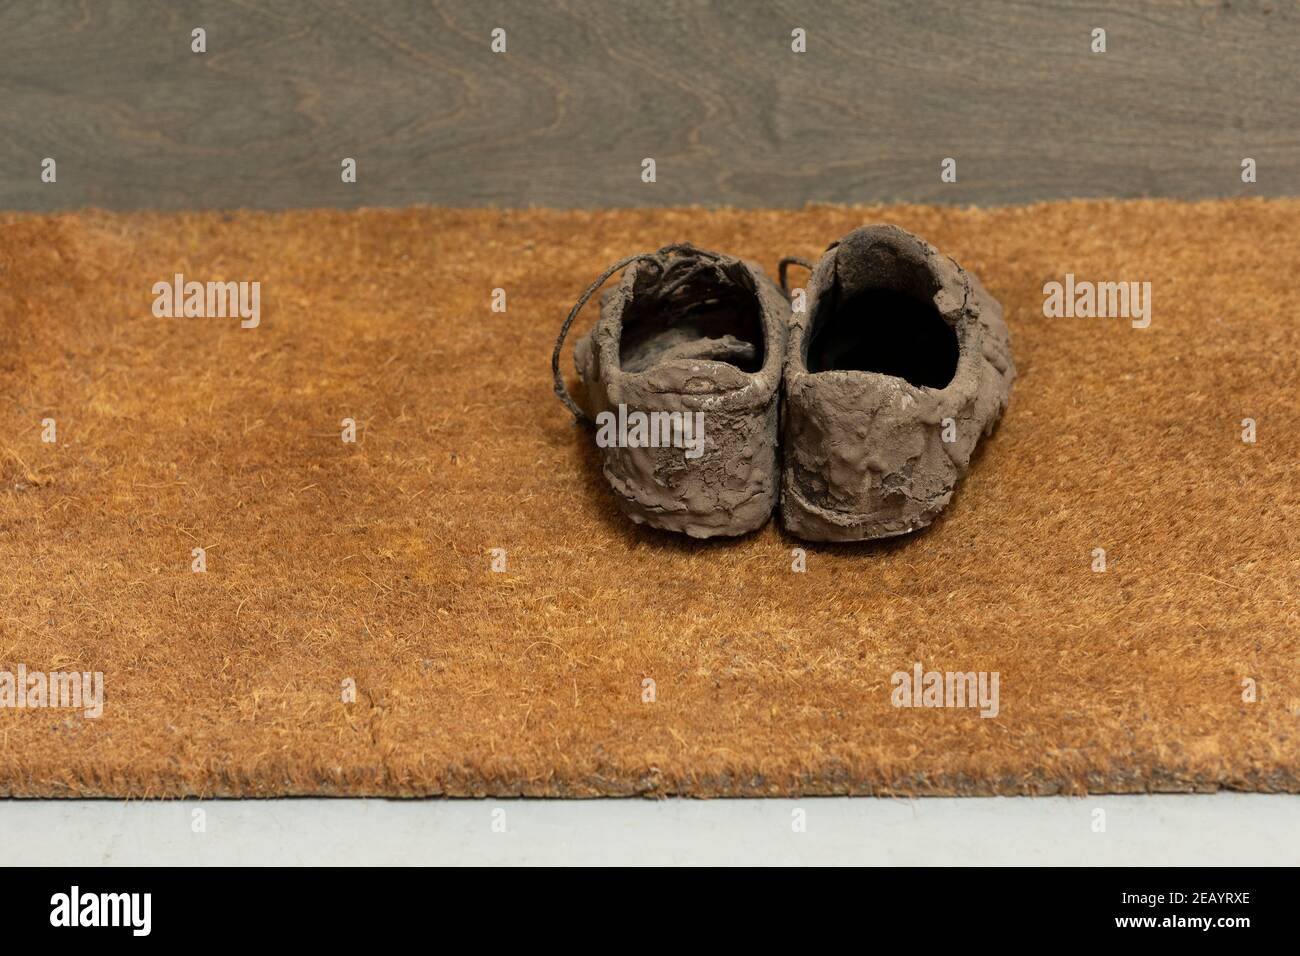 Schmutzige, getrocknete schlammige und unordentliche Sneaker-Schuhe, mit denen sie total bedeckt sind Schlamm, der unerkennbar aussieht, während er auf einer braunen Coco-Fußmatte liegt Stockfoto